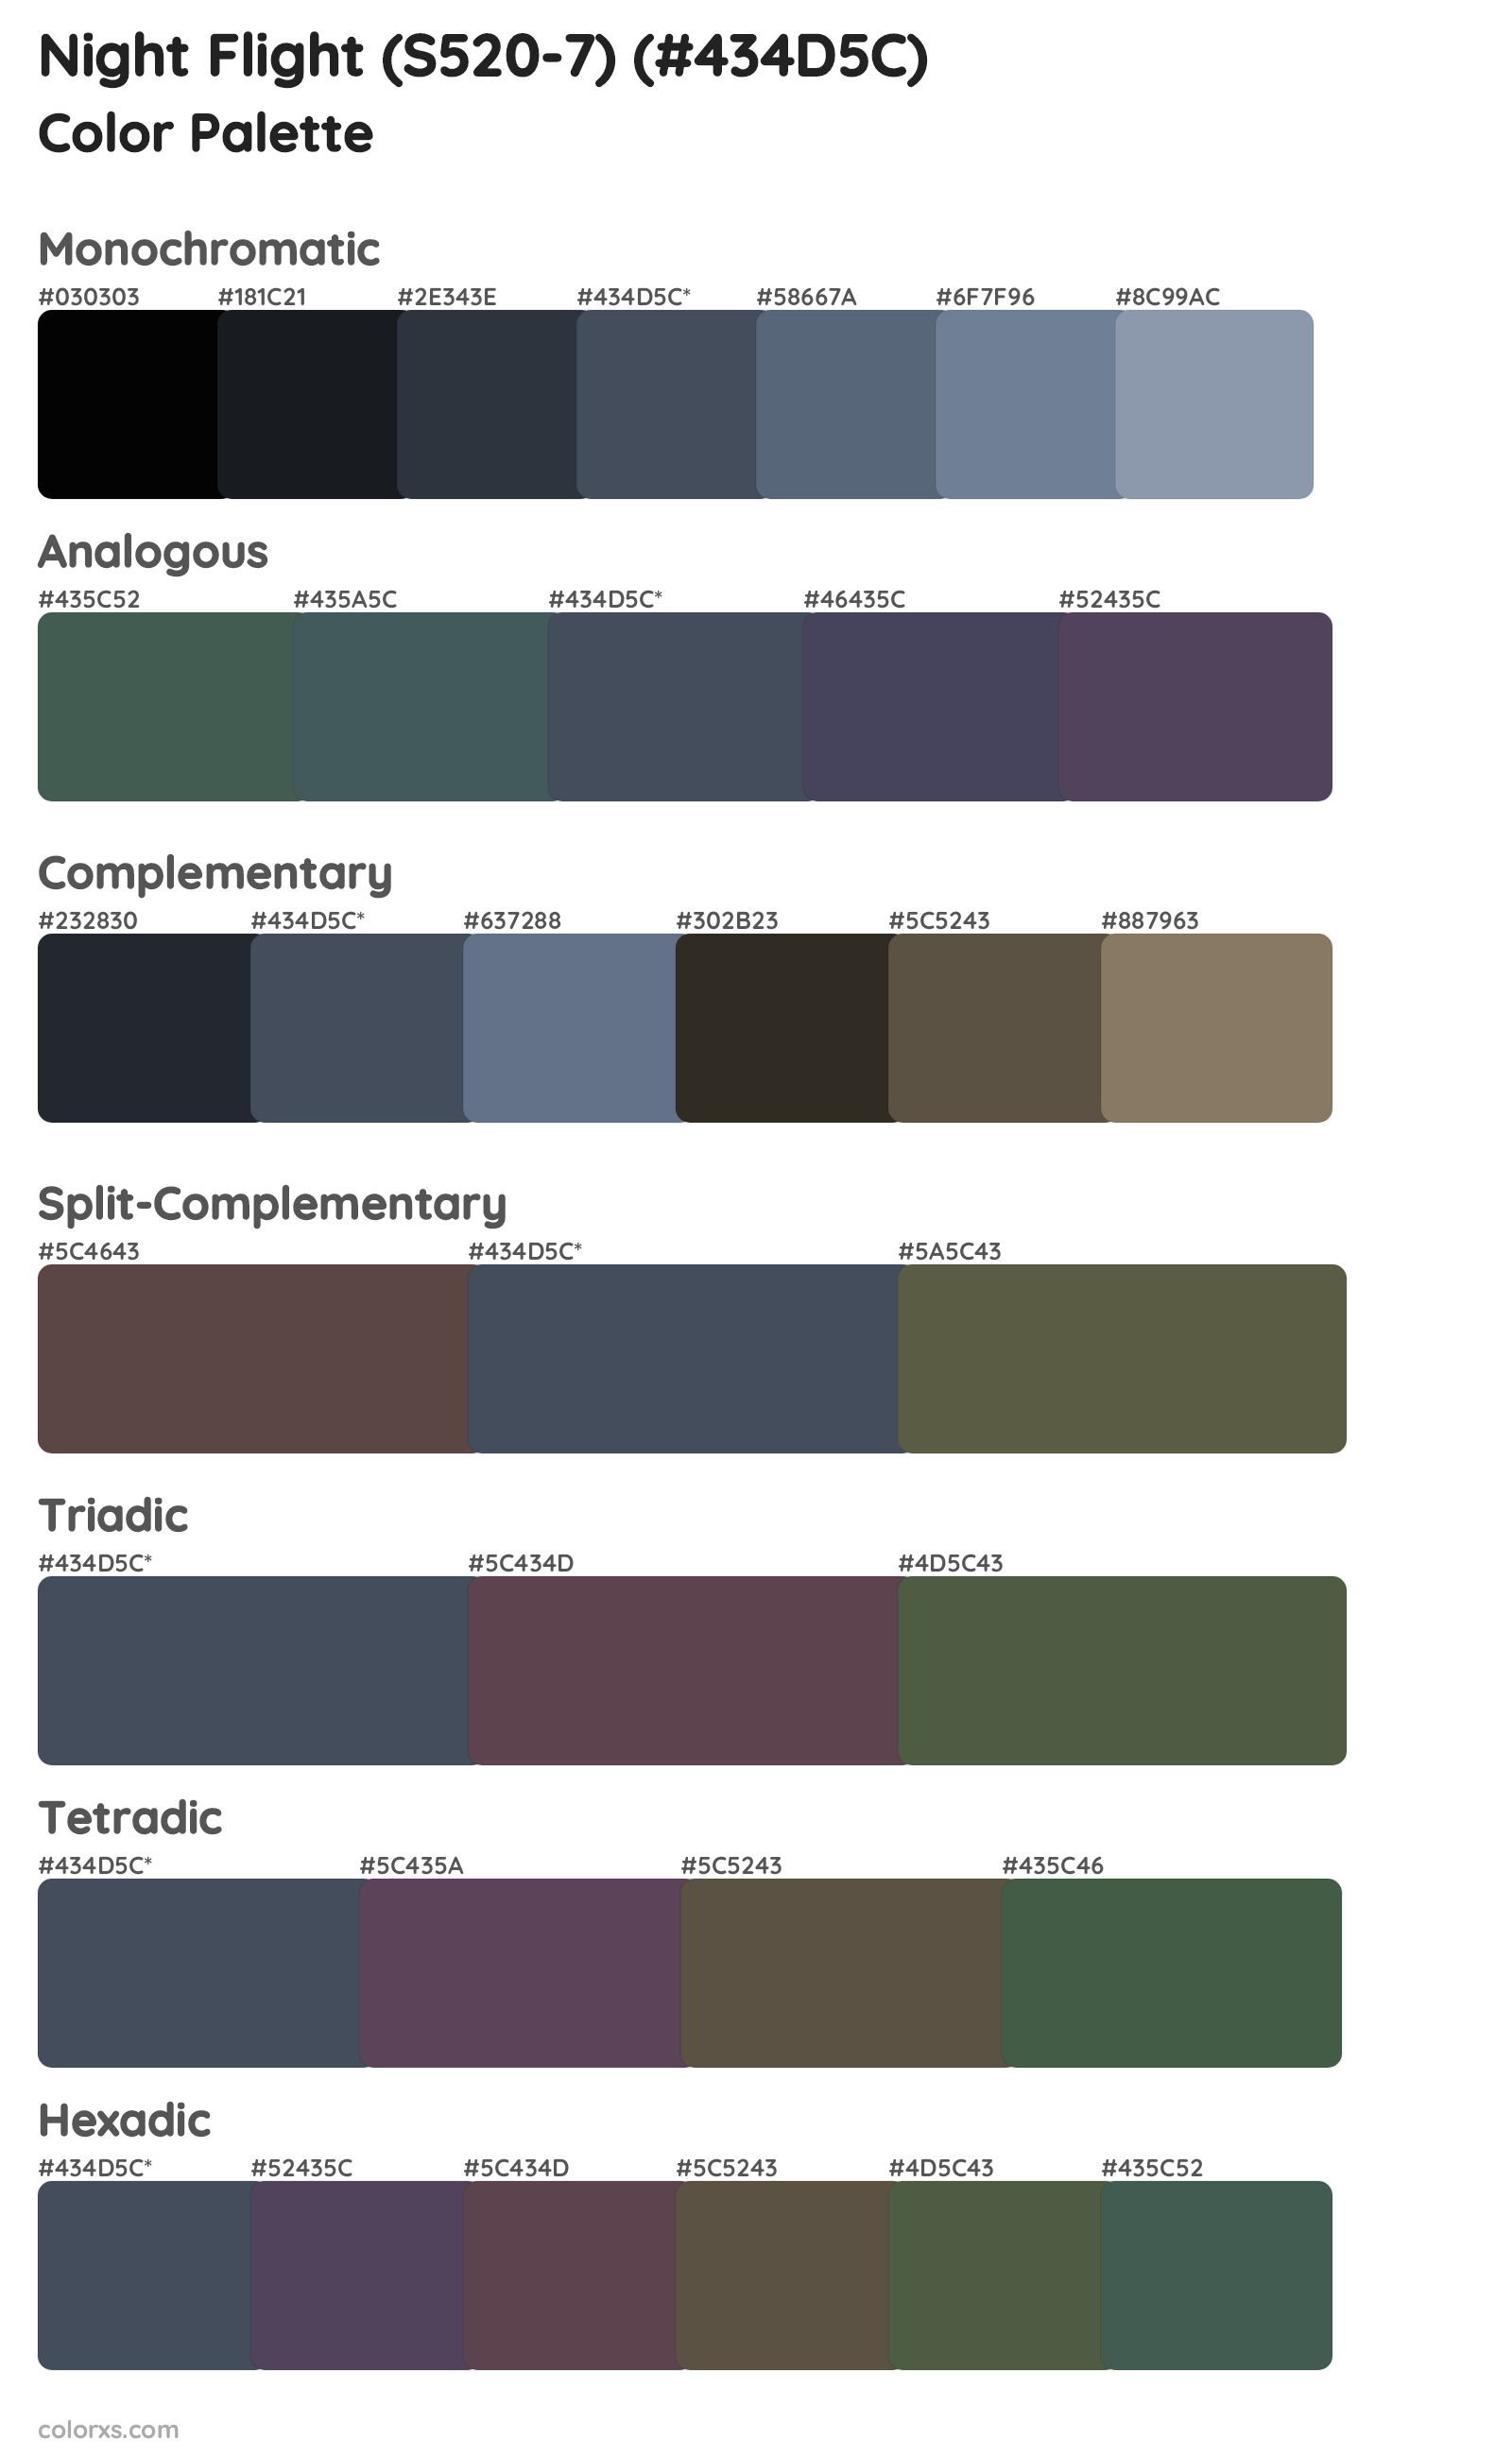 Night Flight (S520-7) Color Scheme Palettes